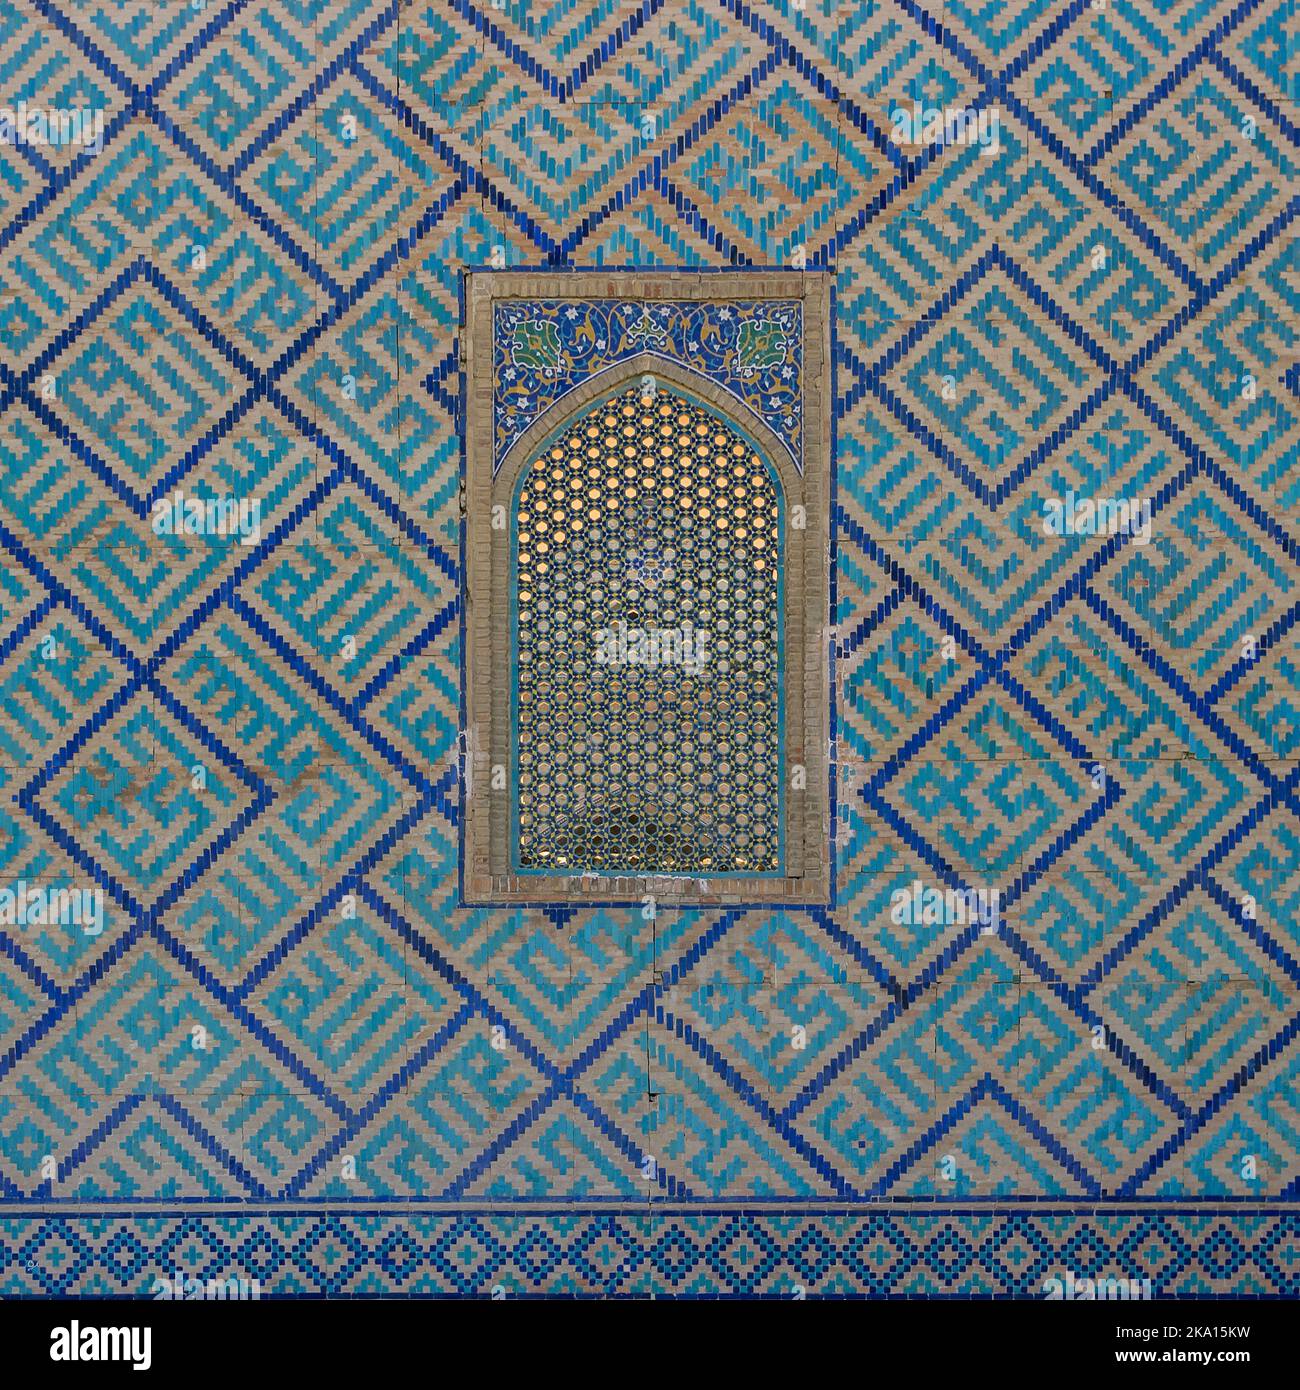 Blaue und türkisfarbene Mosaikdekor und Gitterfenster an der Außenwand von Sher Dor madrassa am historischen Registan-Platz in Samarkand, Usbekistan Stockfoto